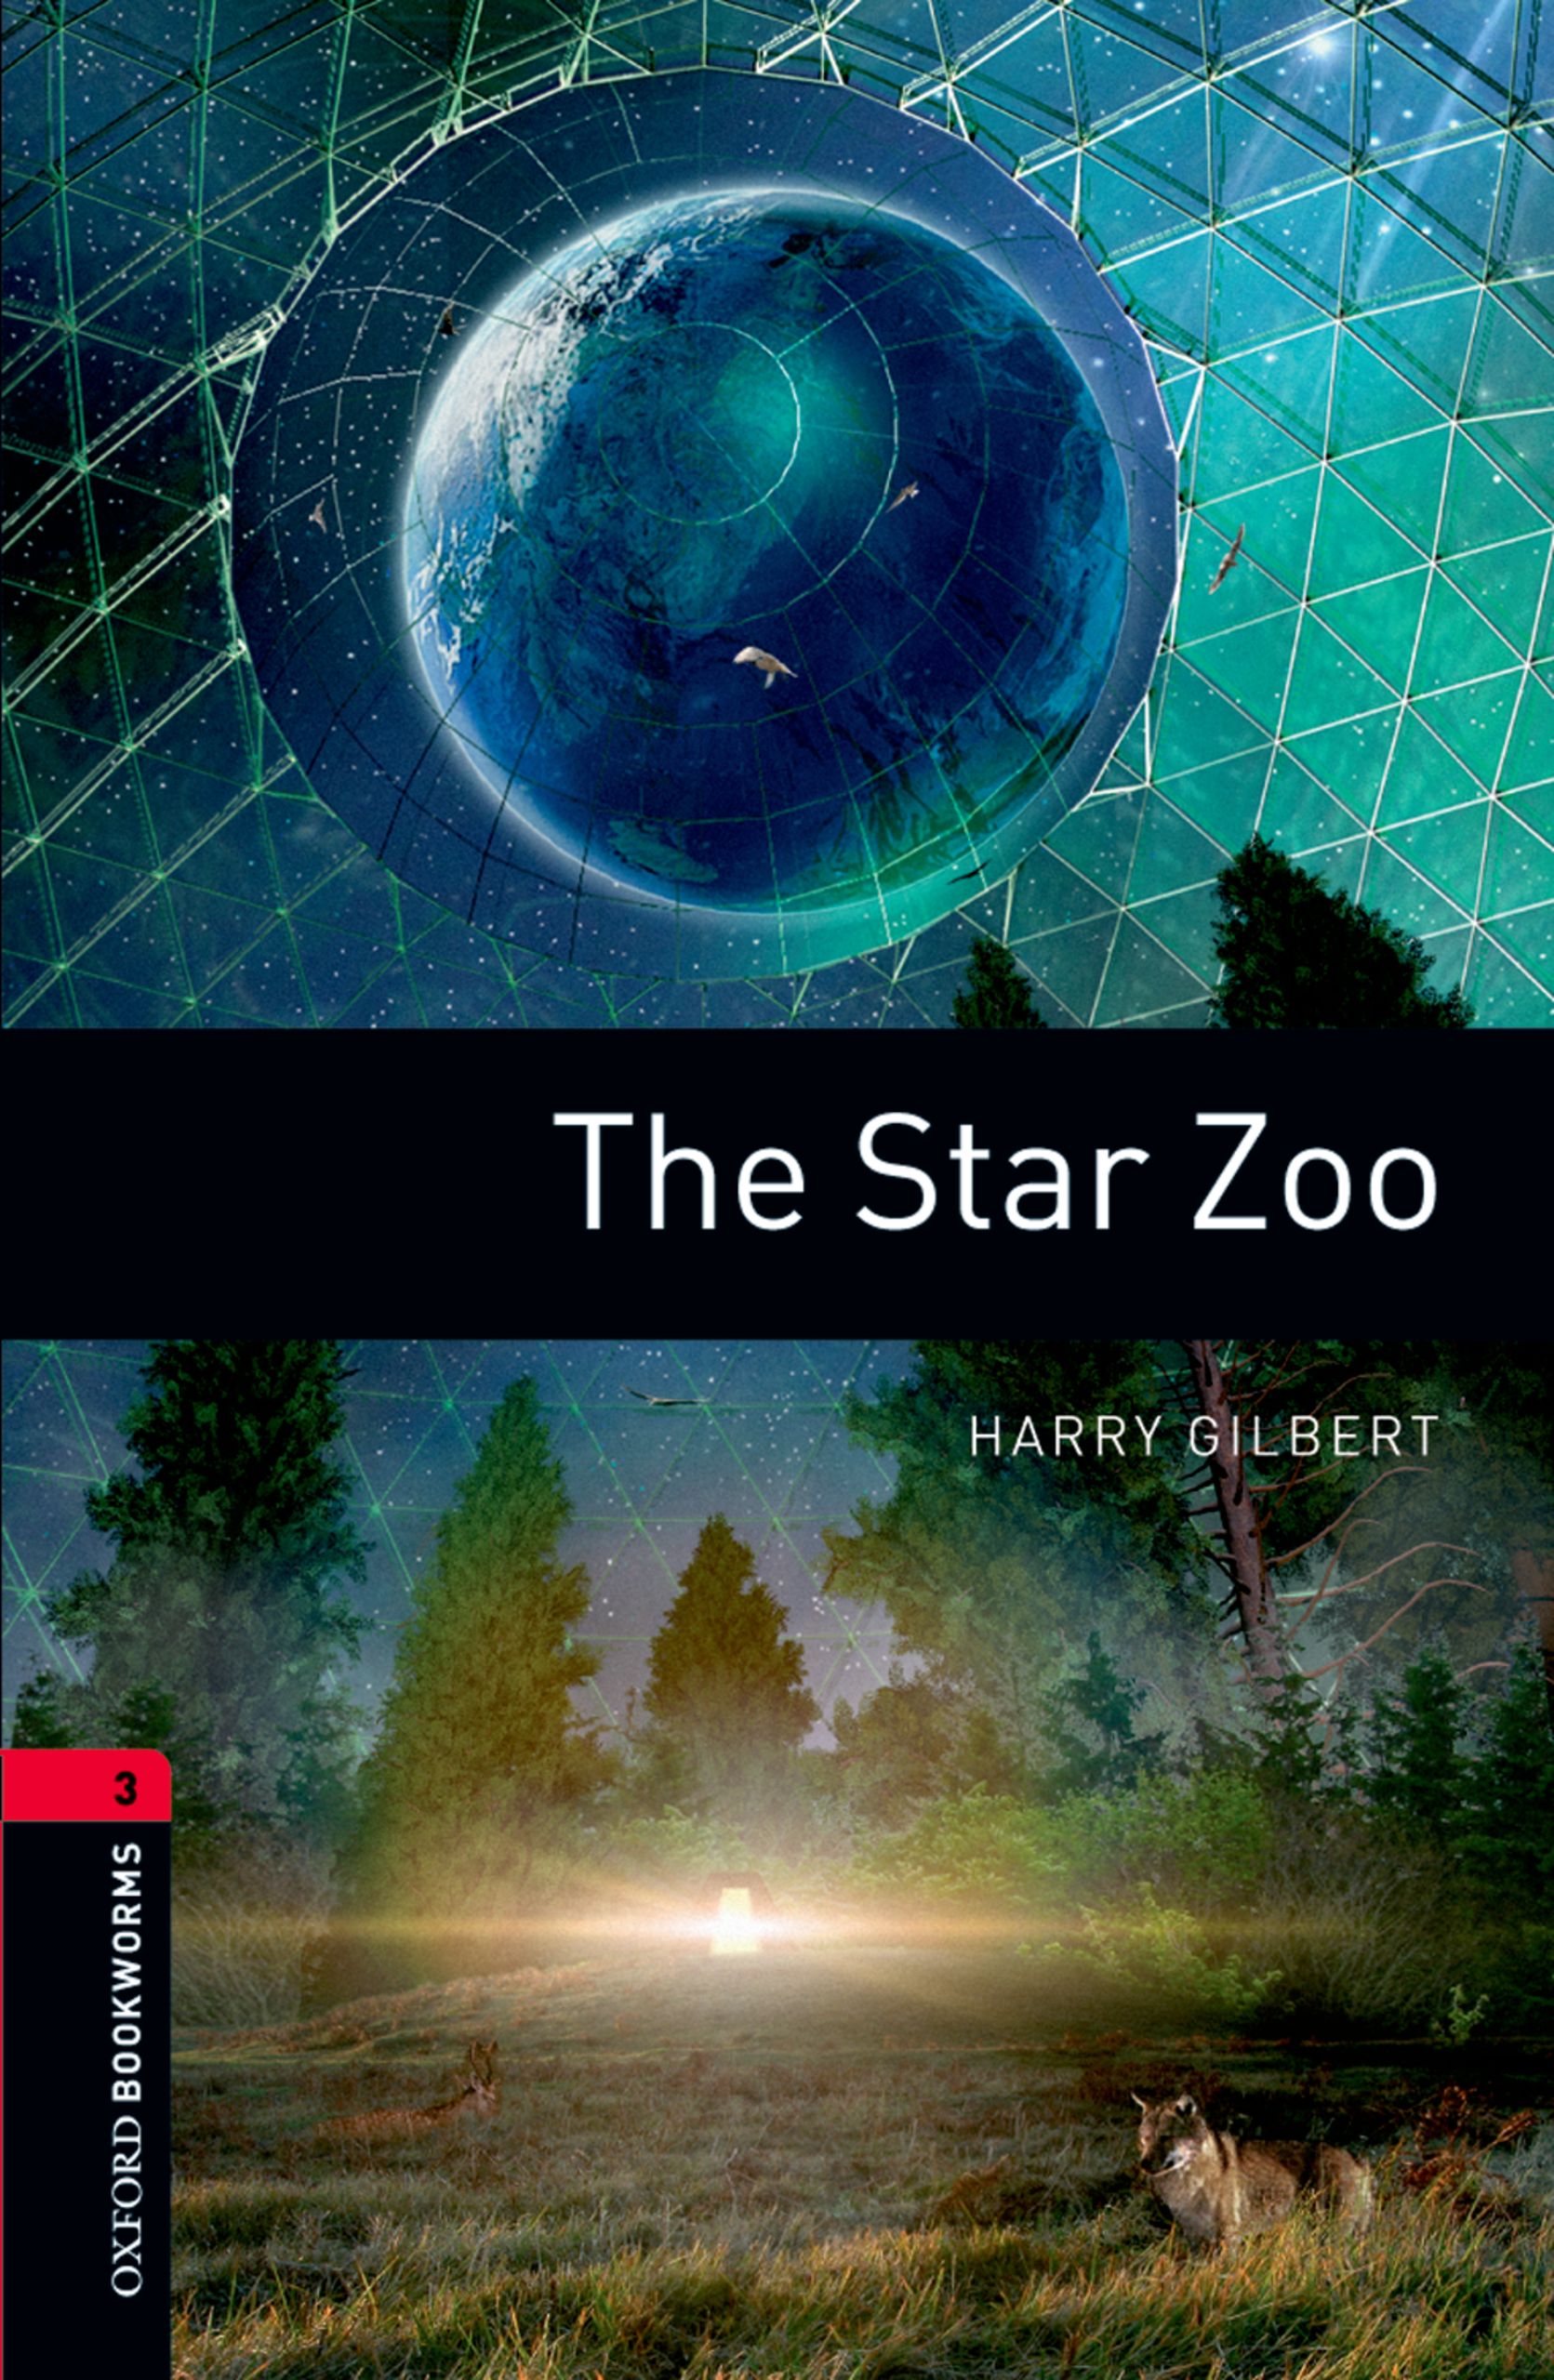 Книга The Star Zoo из серии , созданная Harry Gilbert, может относится к жанру Иностранные языки, Зарубежная образовательная литература, Иностранные языки. Стоимость электронной книги The Star Zoo с идентификатором 23573916 составляет 405.87 руб.